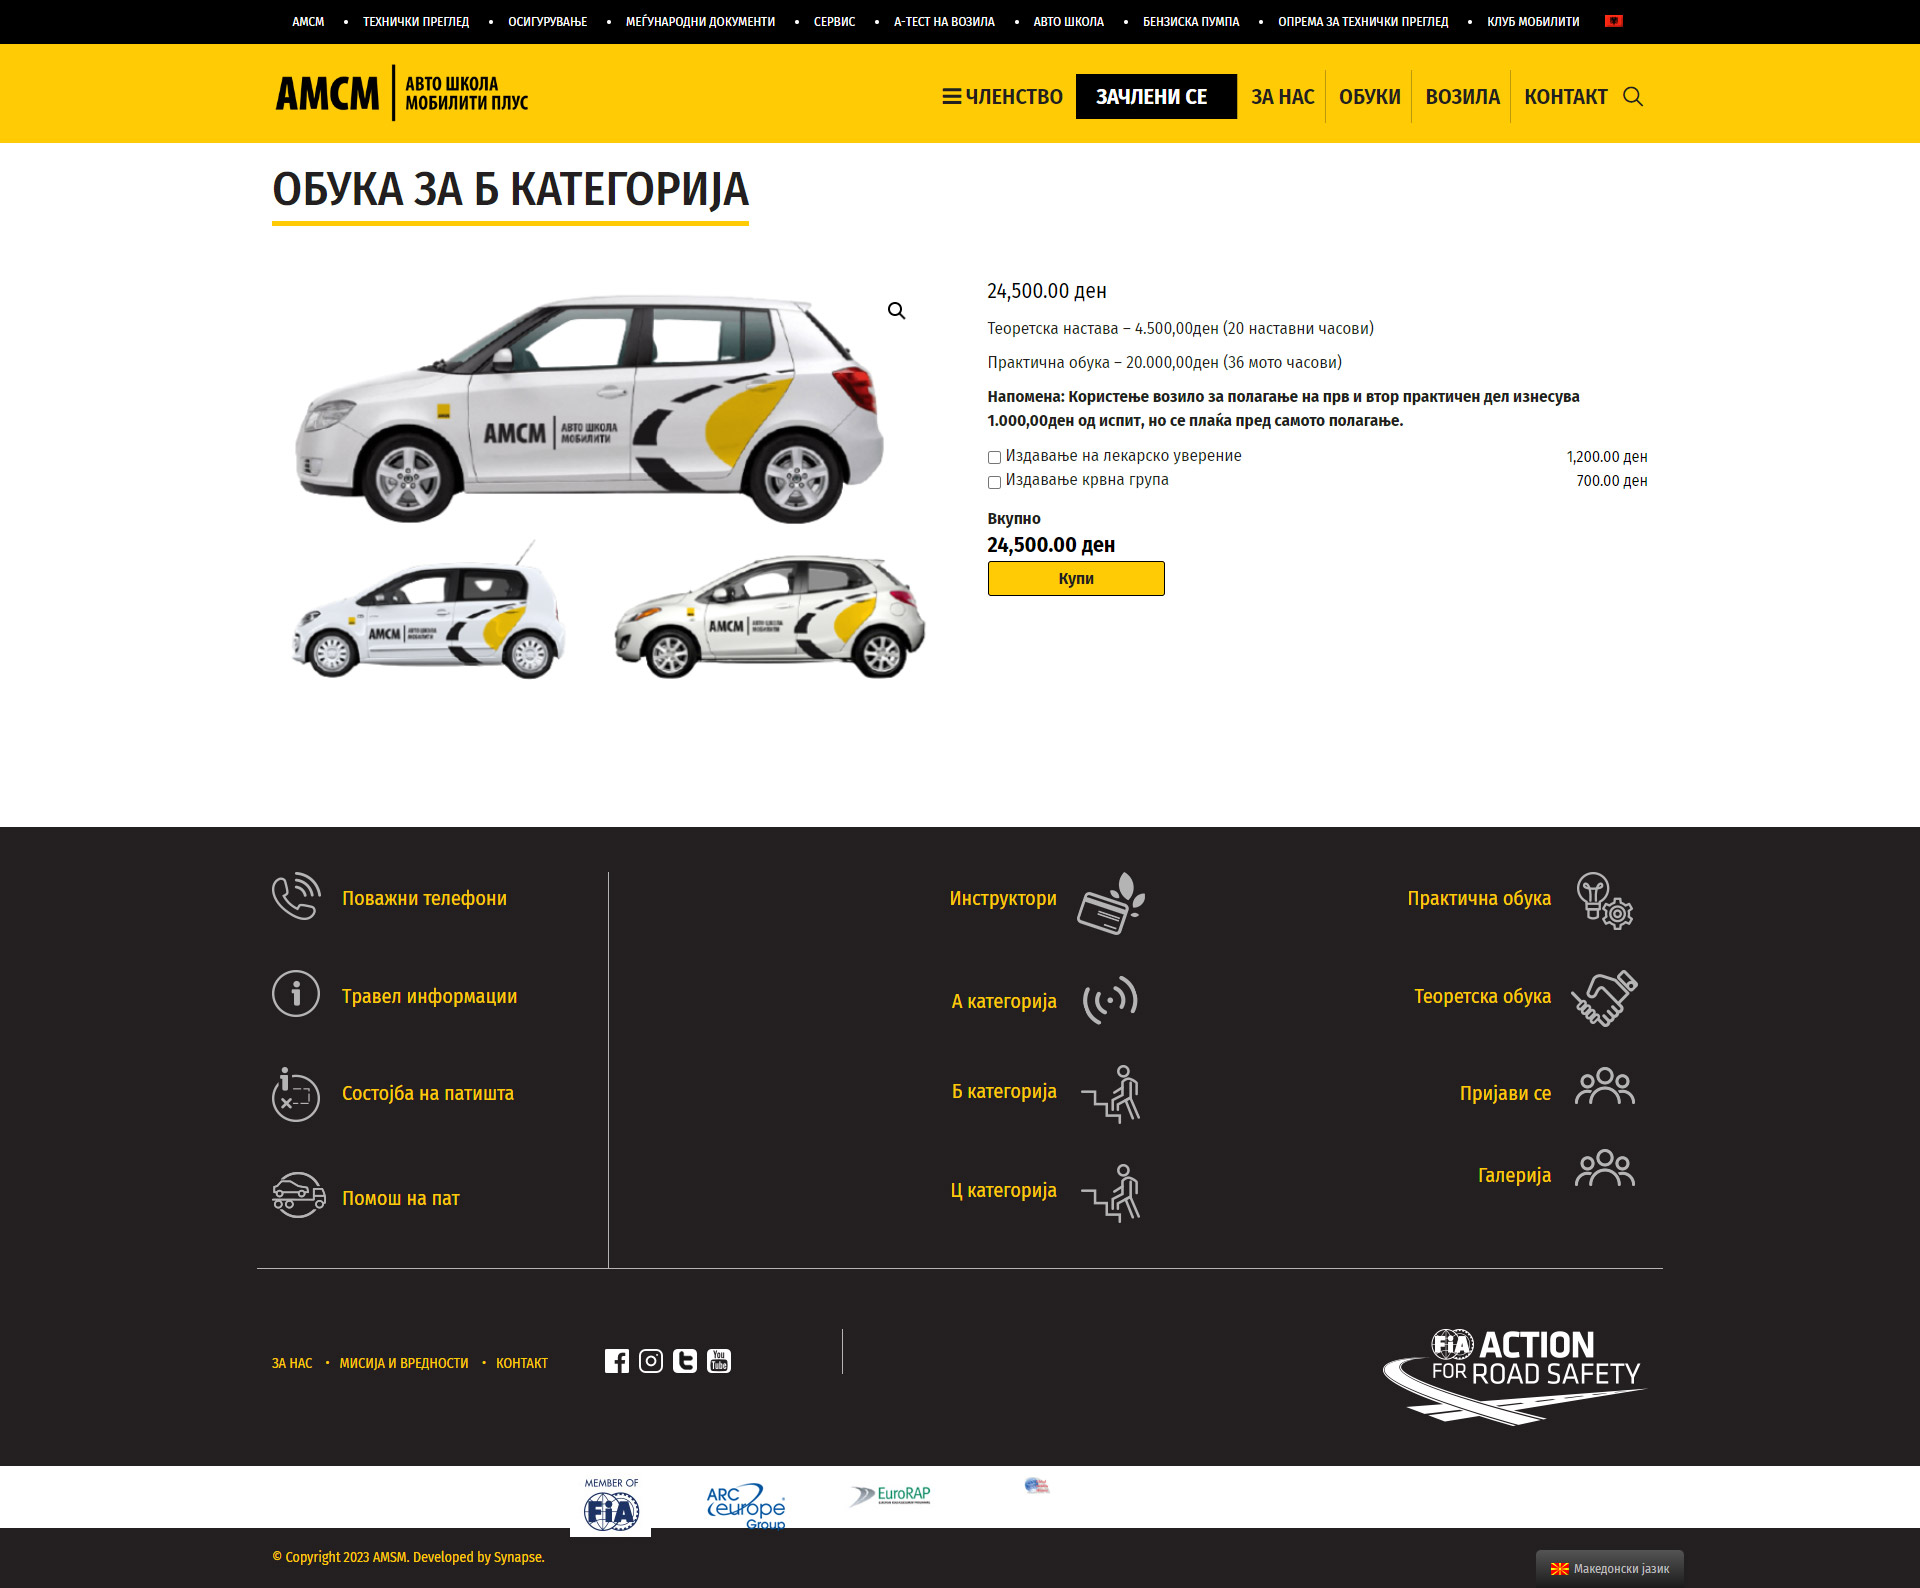 AMSM Avto Skola Mobility Plus